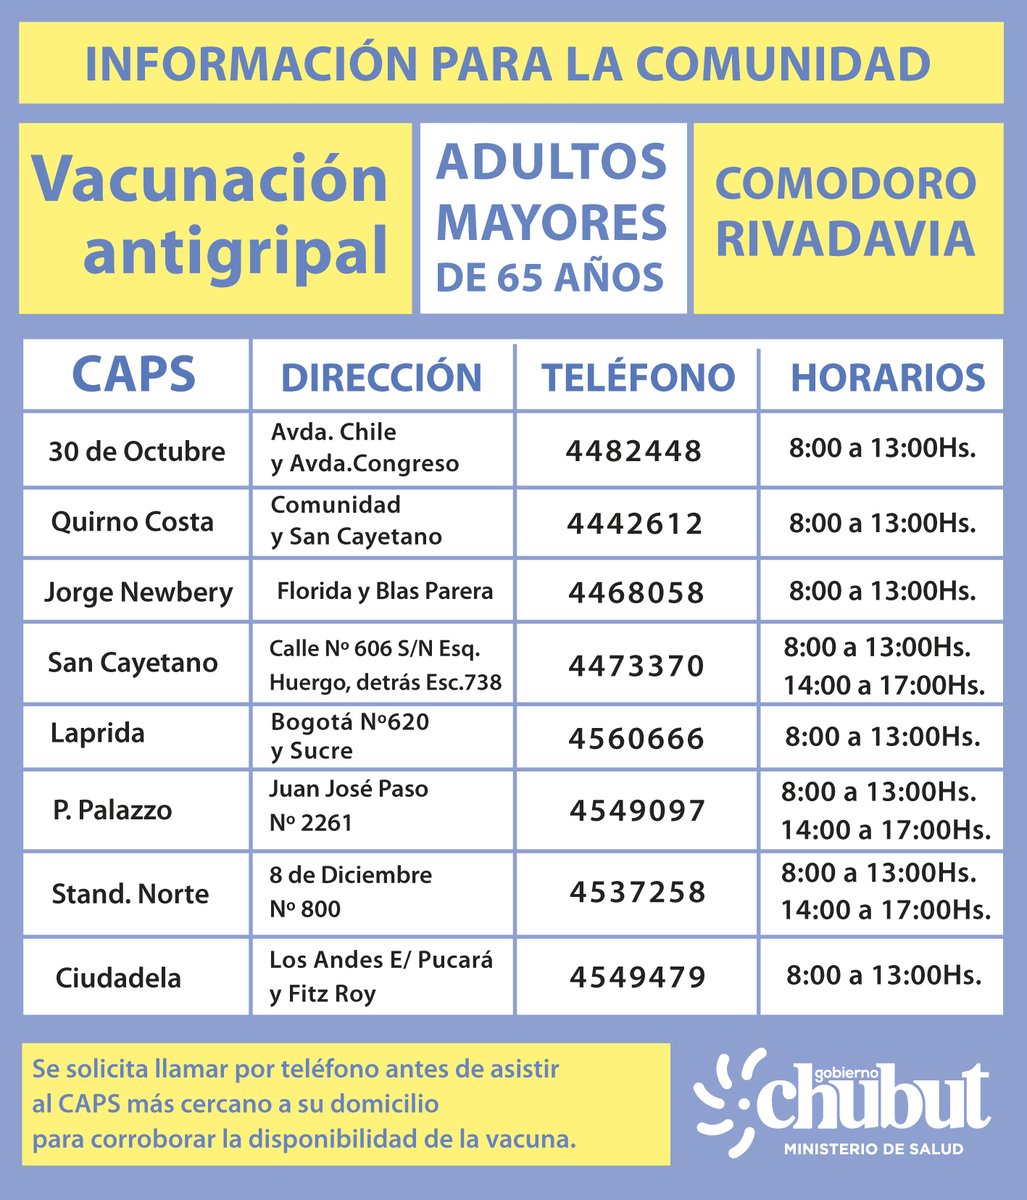 VacunaciónAntigripal
#Mayoresde65años.
#ComodoroRivadavia

✅ Cronograma de Vacunación Antigripal para adultos mayores de 65 años en #ComodoroRivadavia.
⛔ Para el resto de los grupos se informará en su momento.